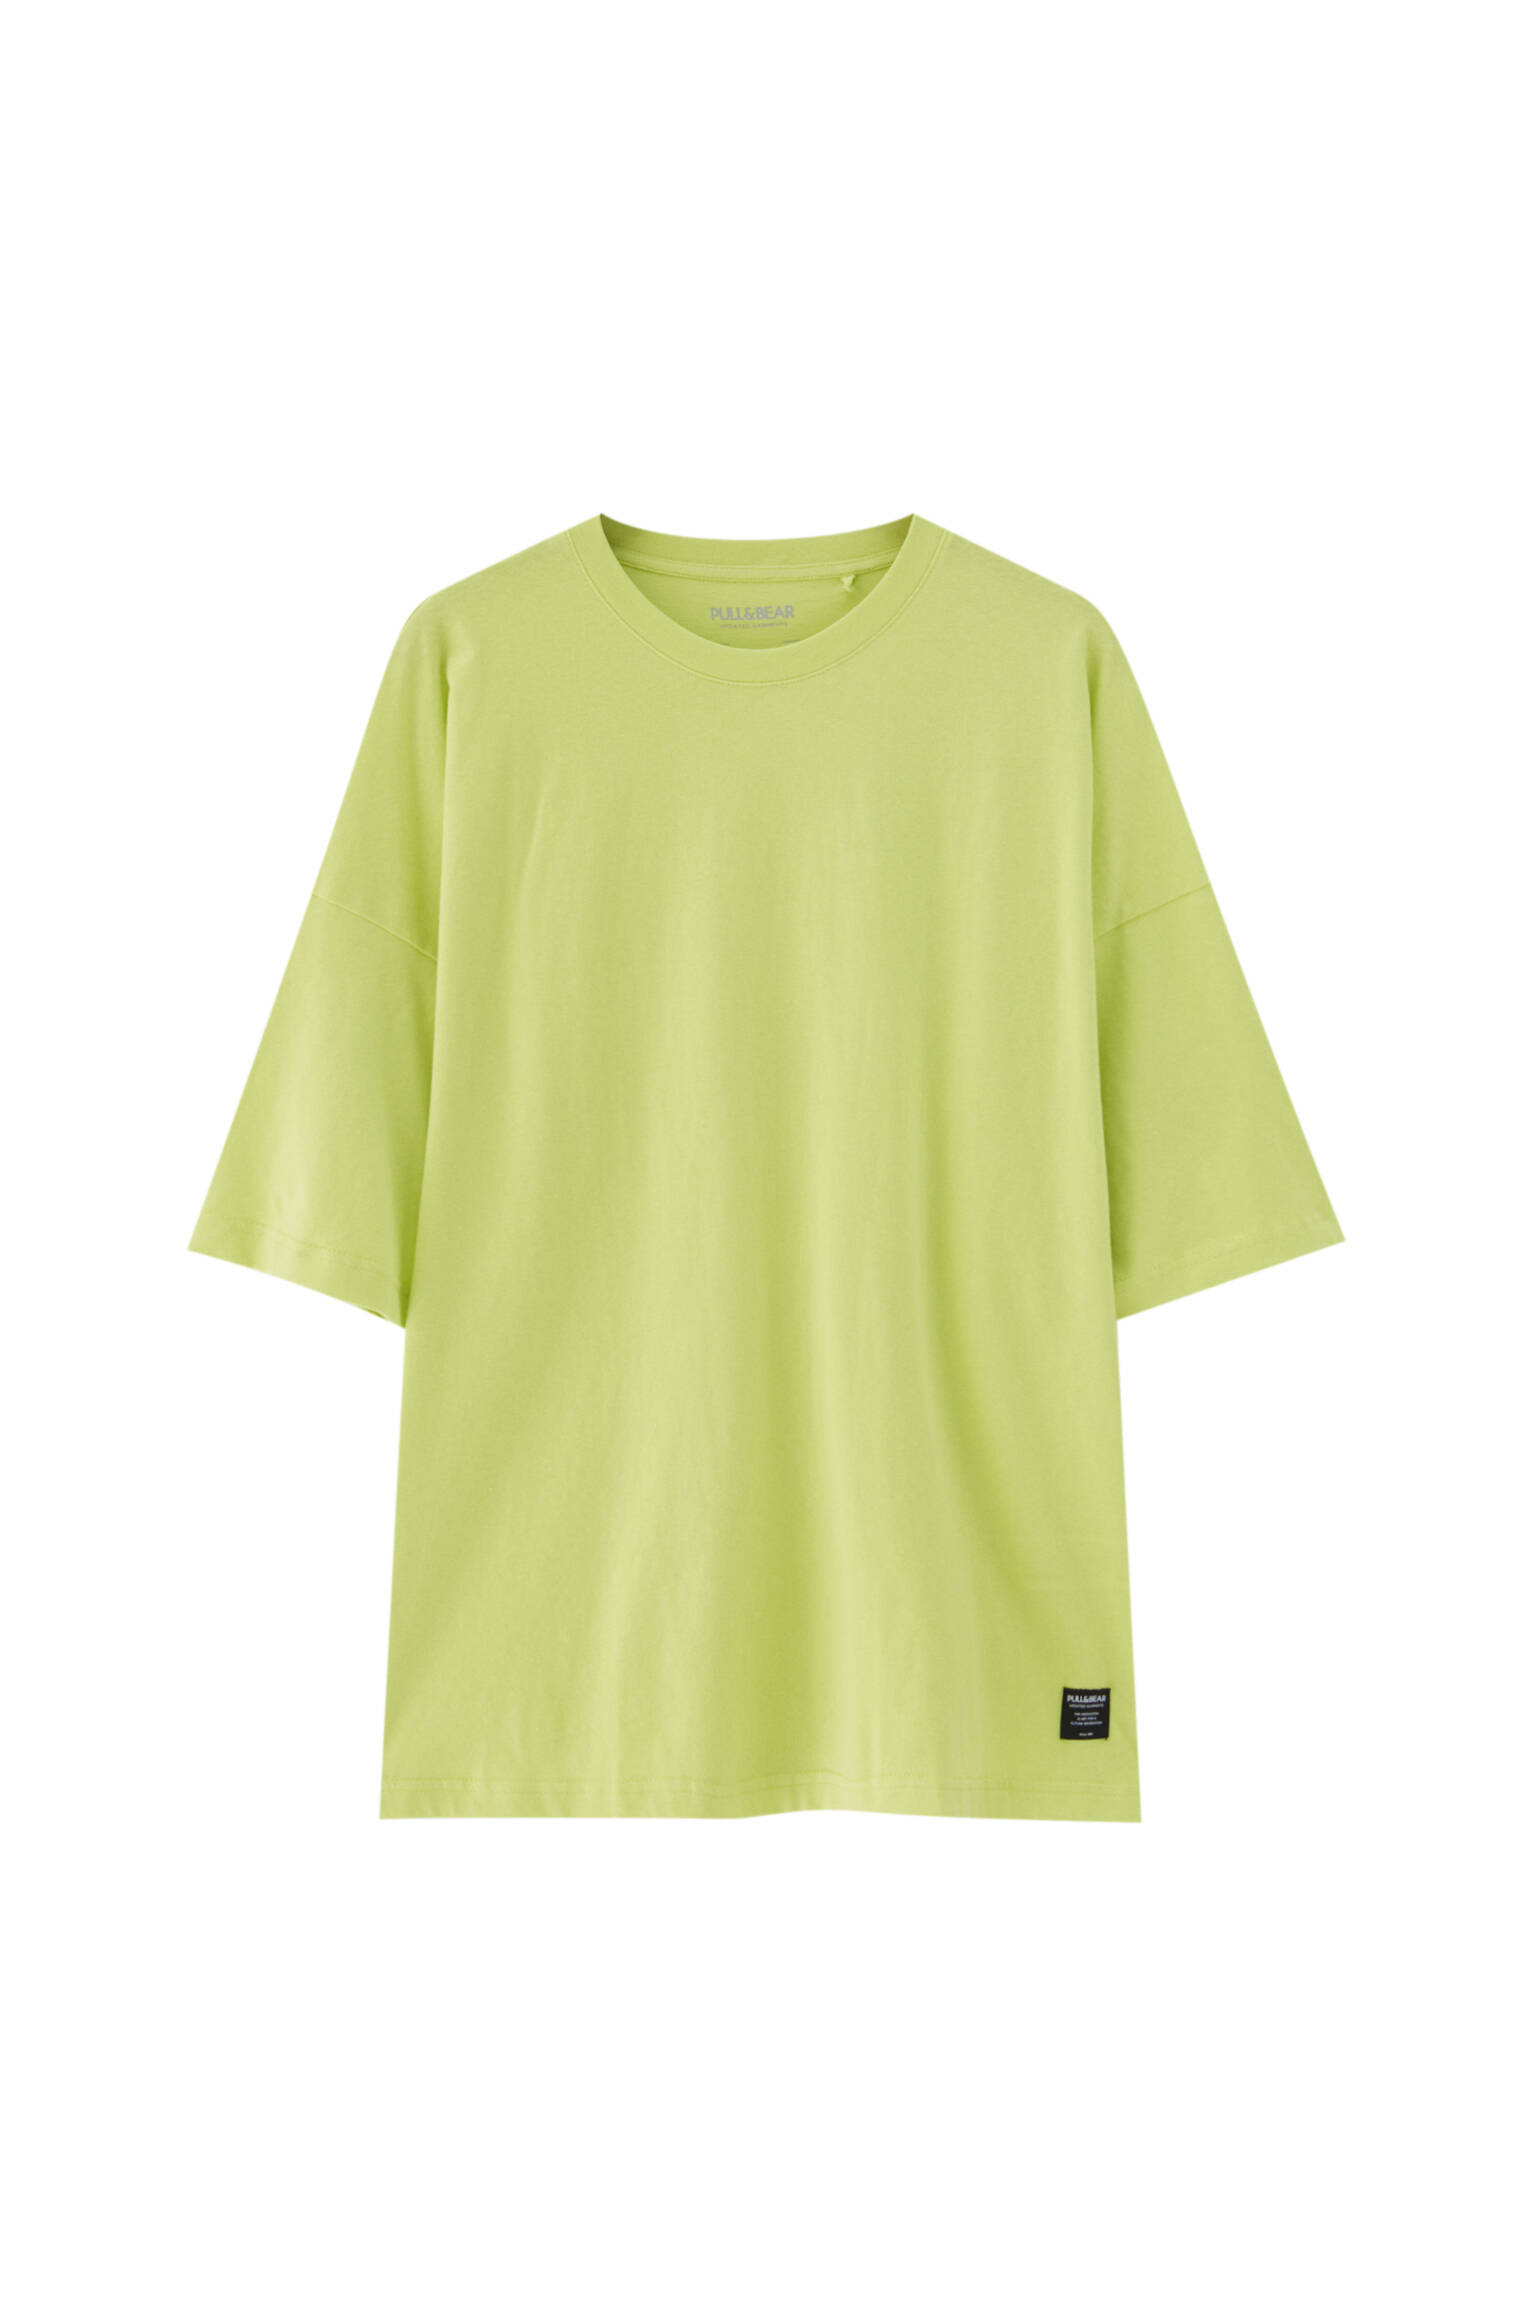 Pull&bear Homme T-shirt Loose Basique à Manches Courtes Et Col Rond, Disponible En Plusieurs Couleurs Unies. Citron Vert L